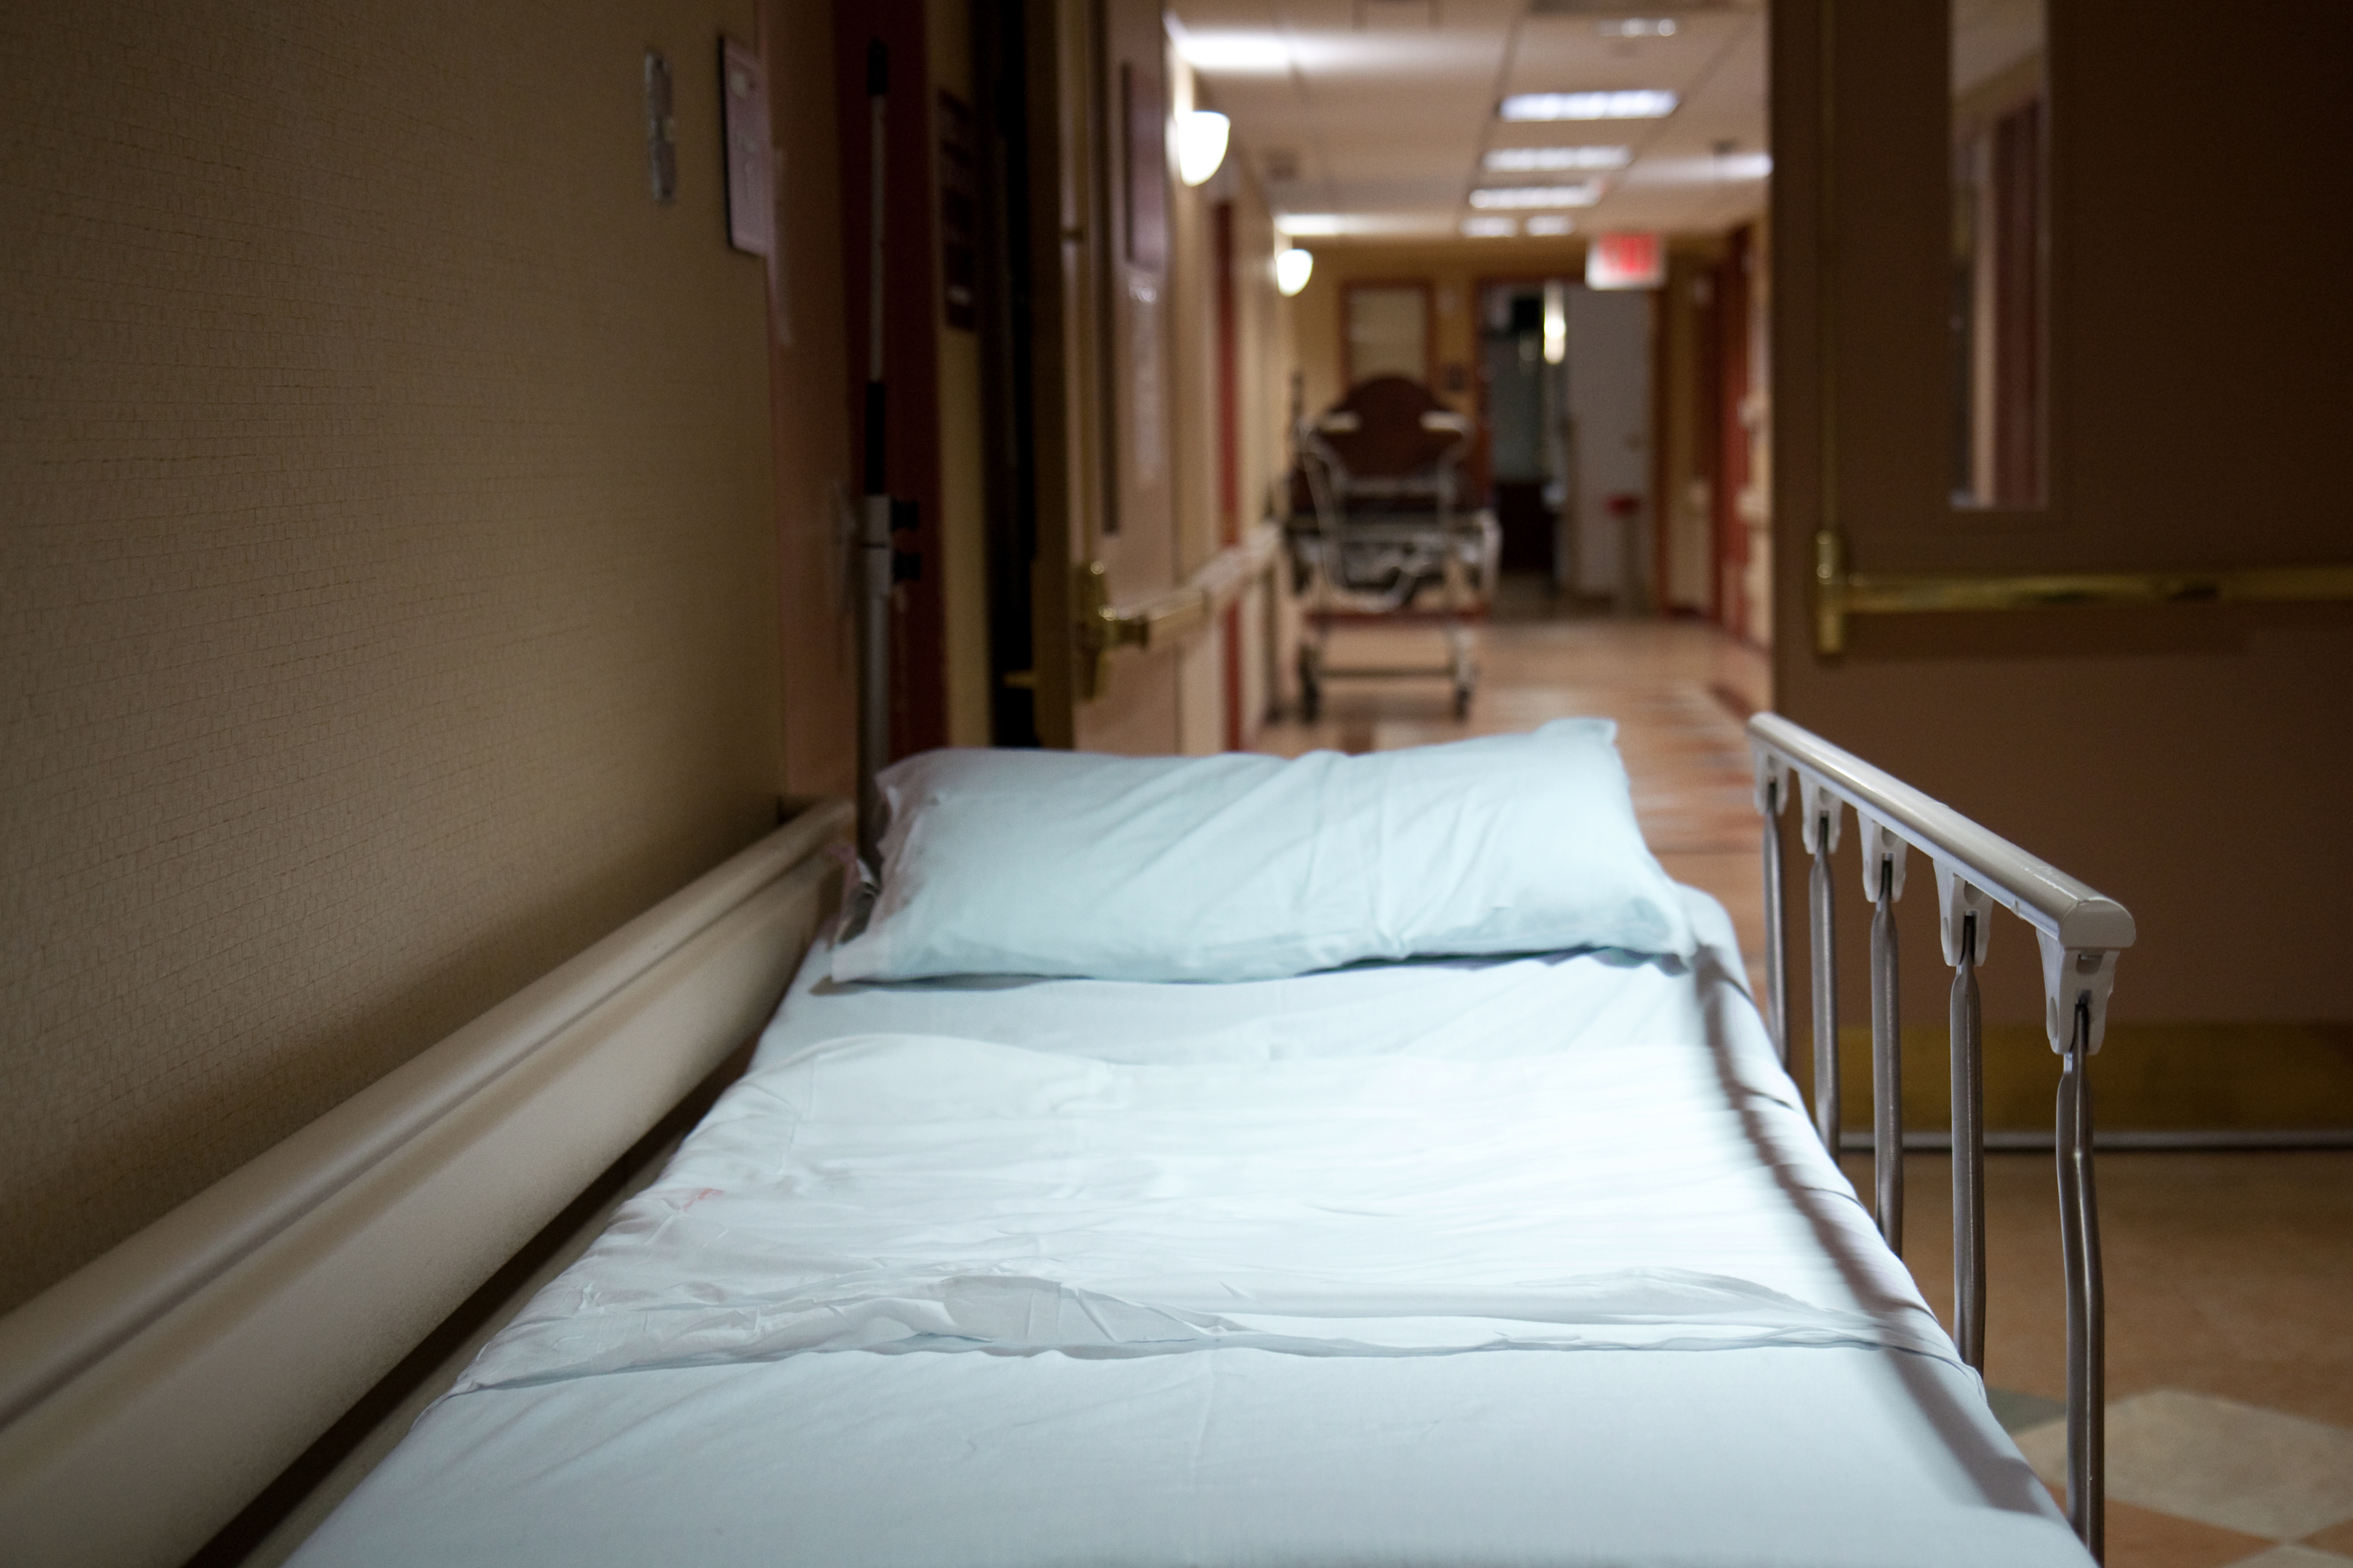 Лежу с ковидом. Мариинская больница палаты. Кровать в больнице. Больничная кровать в палате. Кровать в палате больницы.